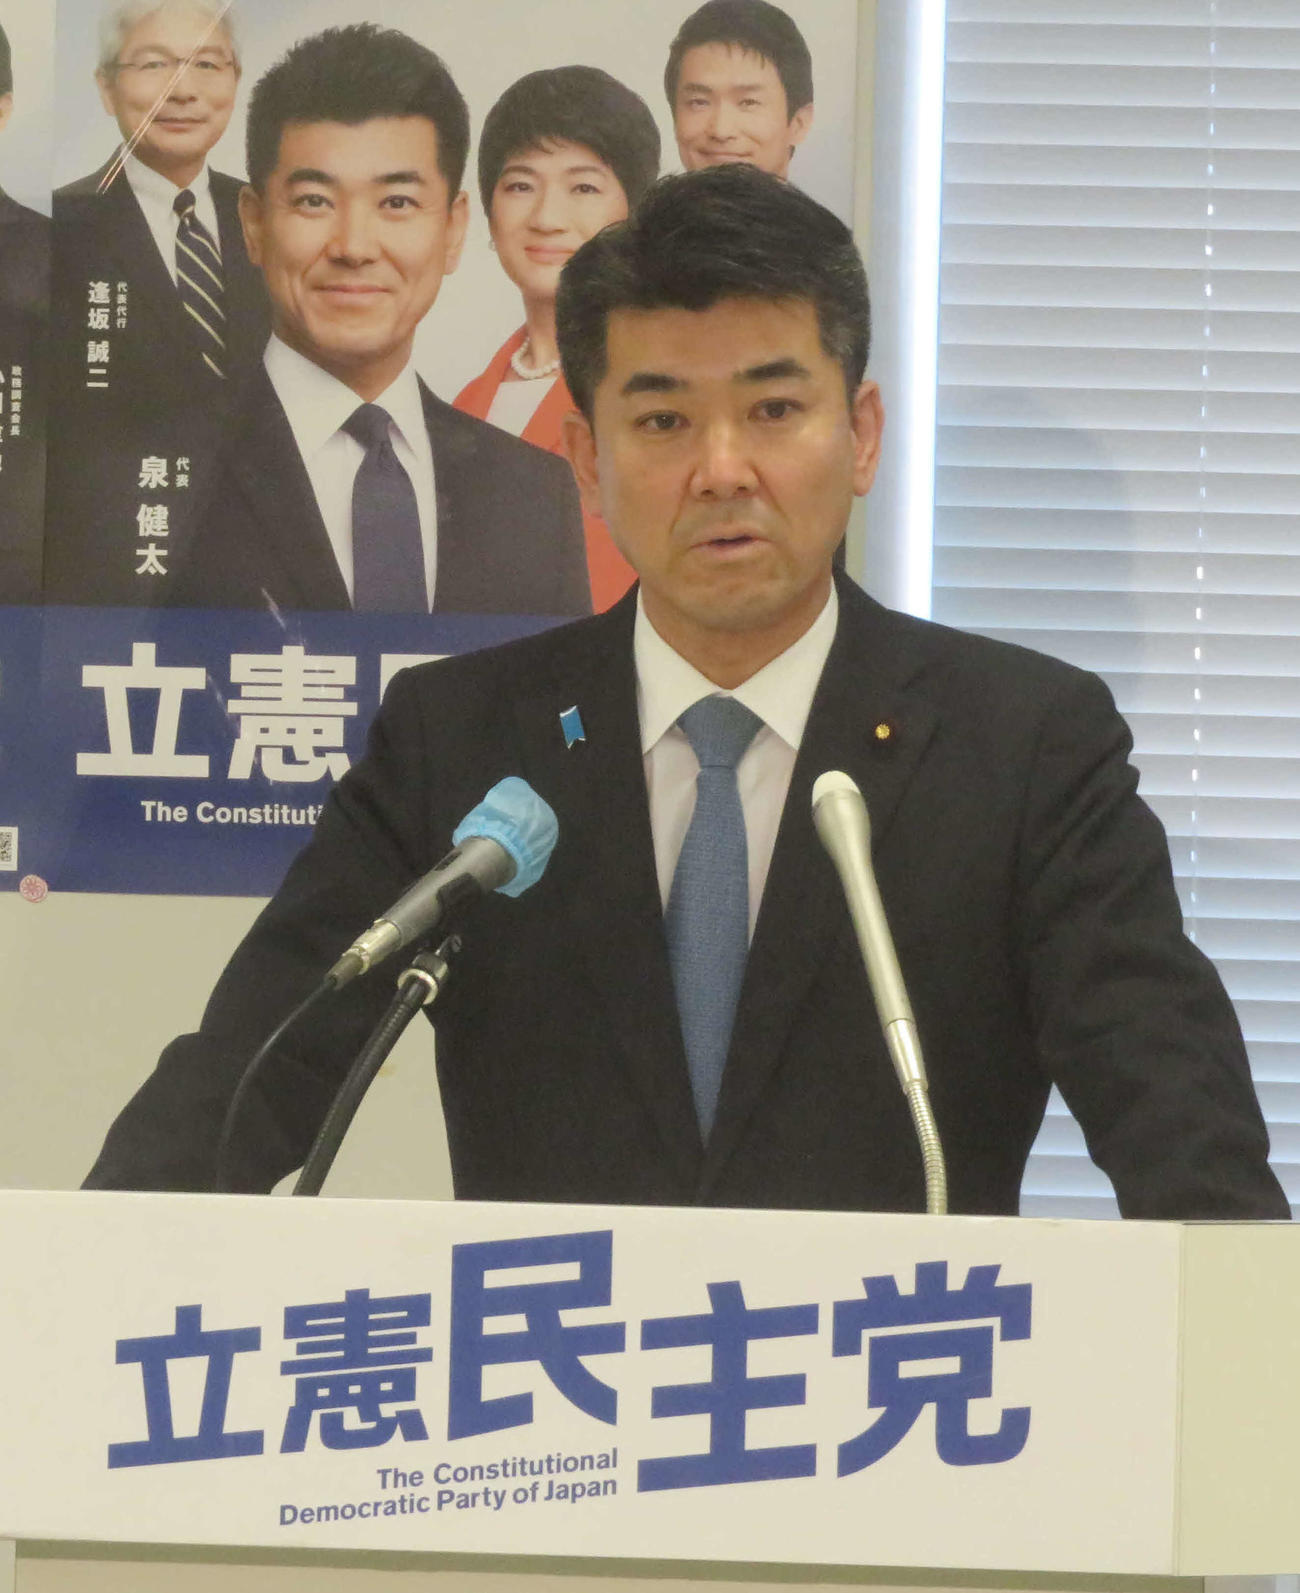 立憲民主党の泉健太代表は、連合の芳野友子会長と会談後に協議内容などを会見で明らかにした（撮影・大上悟）